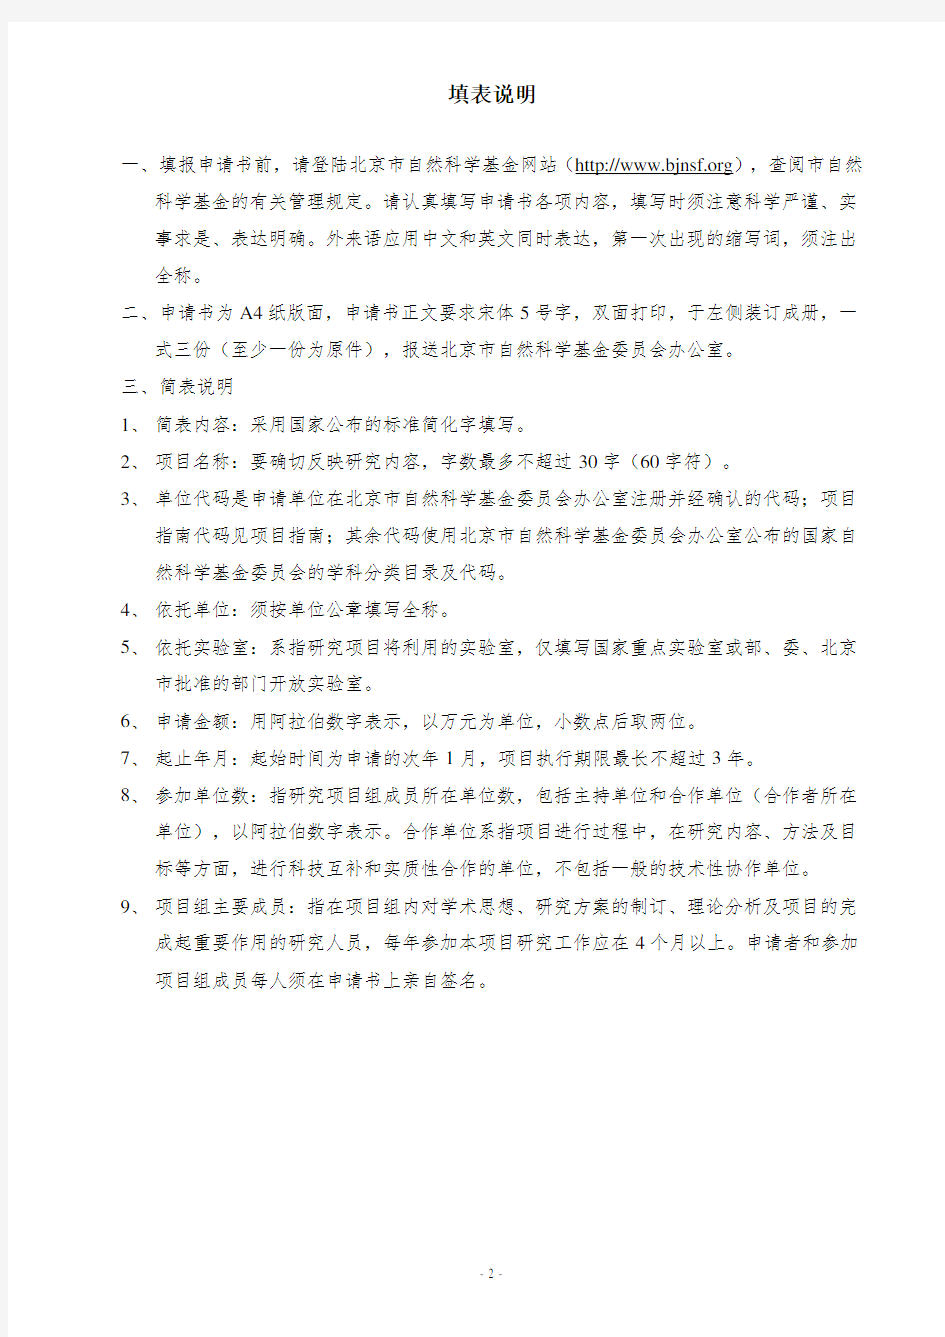 北京市自然科学基金申请书模板(面上项目)